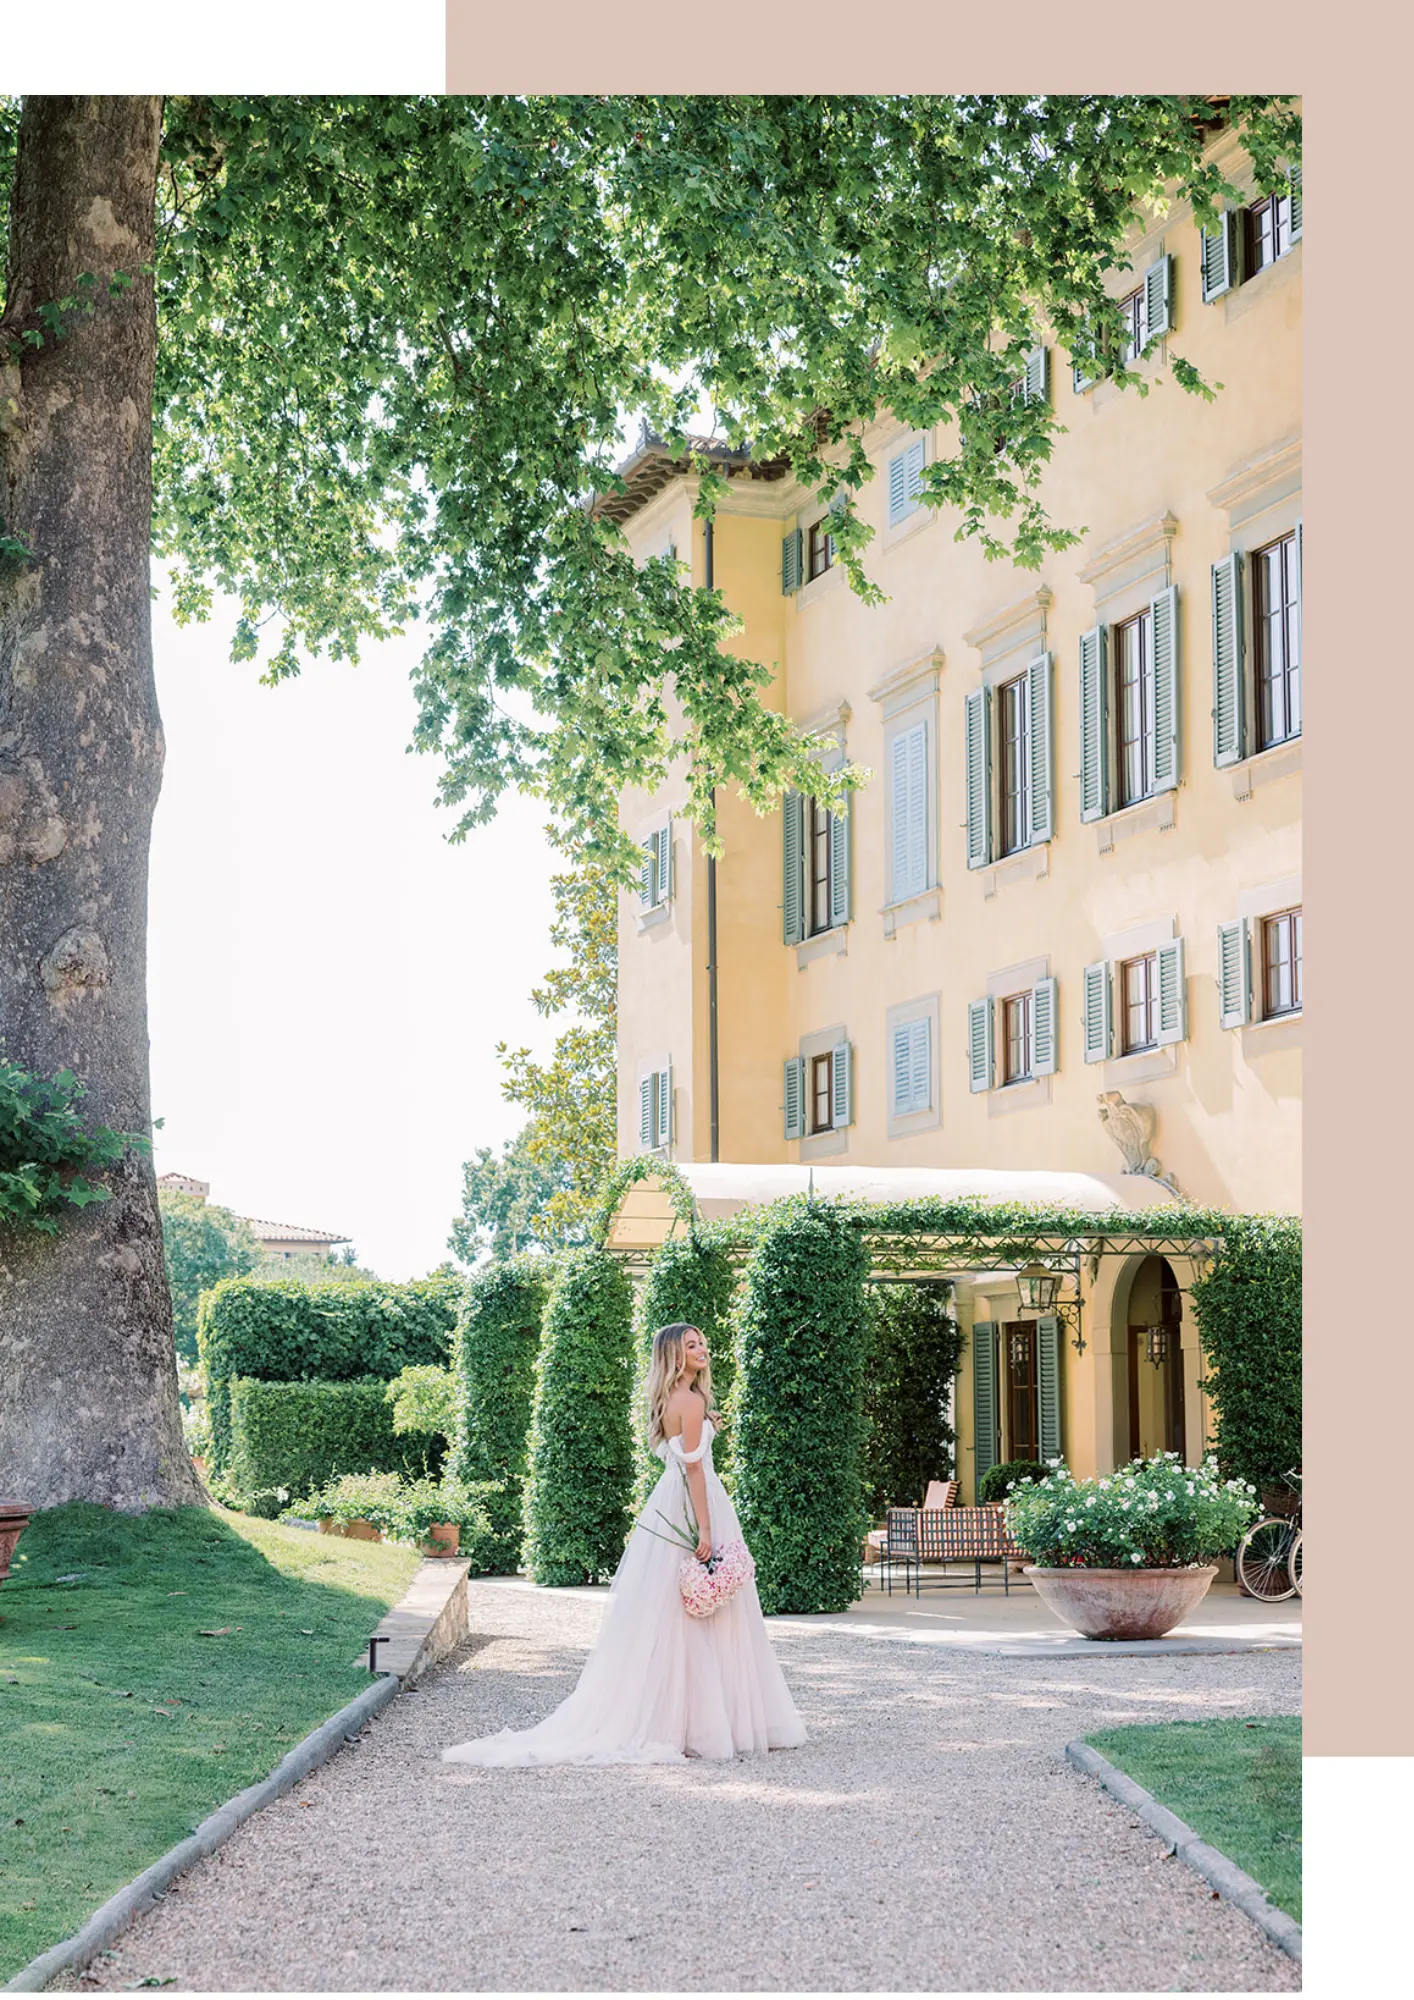 Luxury wedding venue in Italy, Villa La Massa